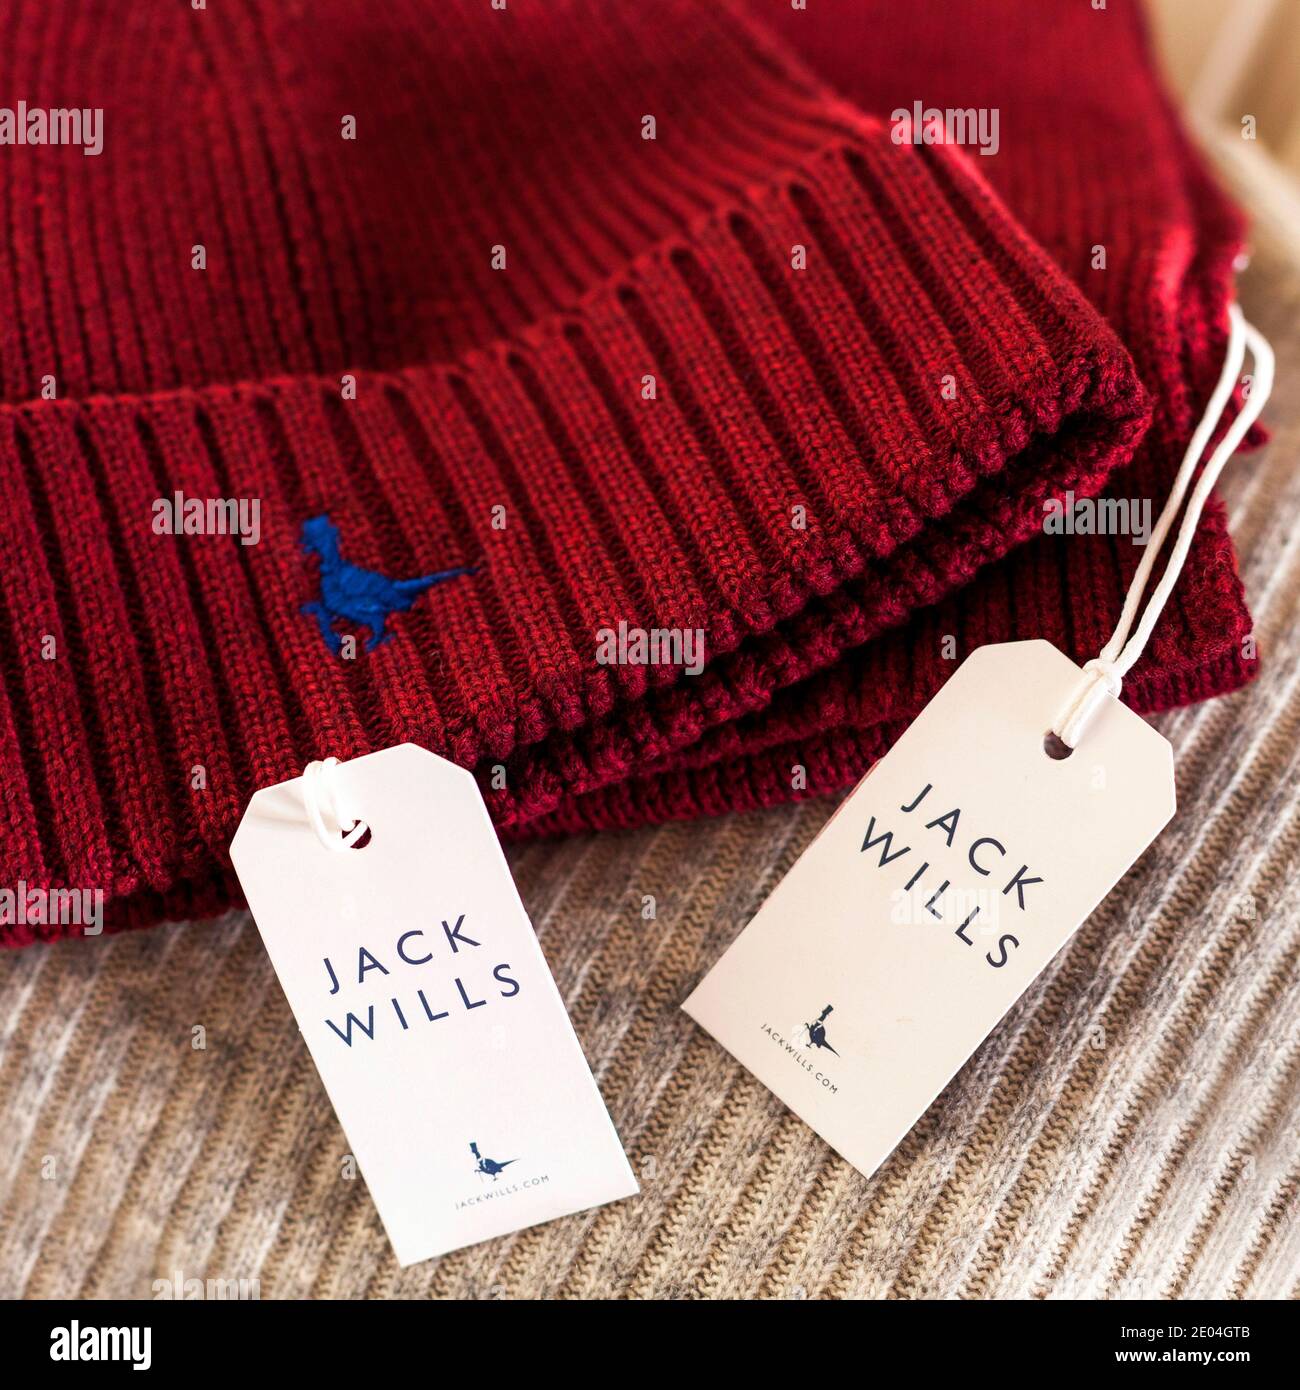 Jack Wills Marca de ropa británica fundada en Salcombe, Devon en 1999, Foto de stock